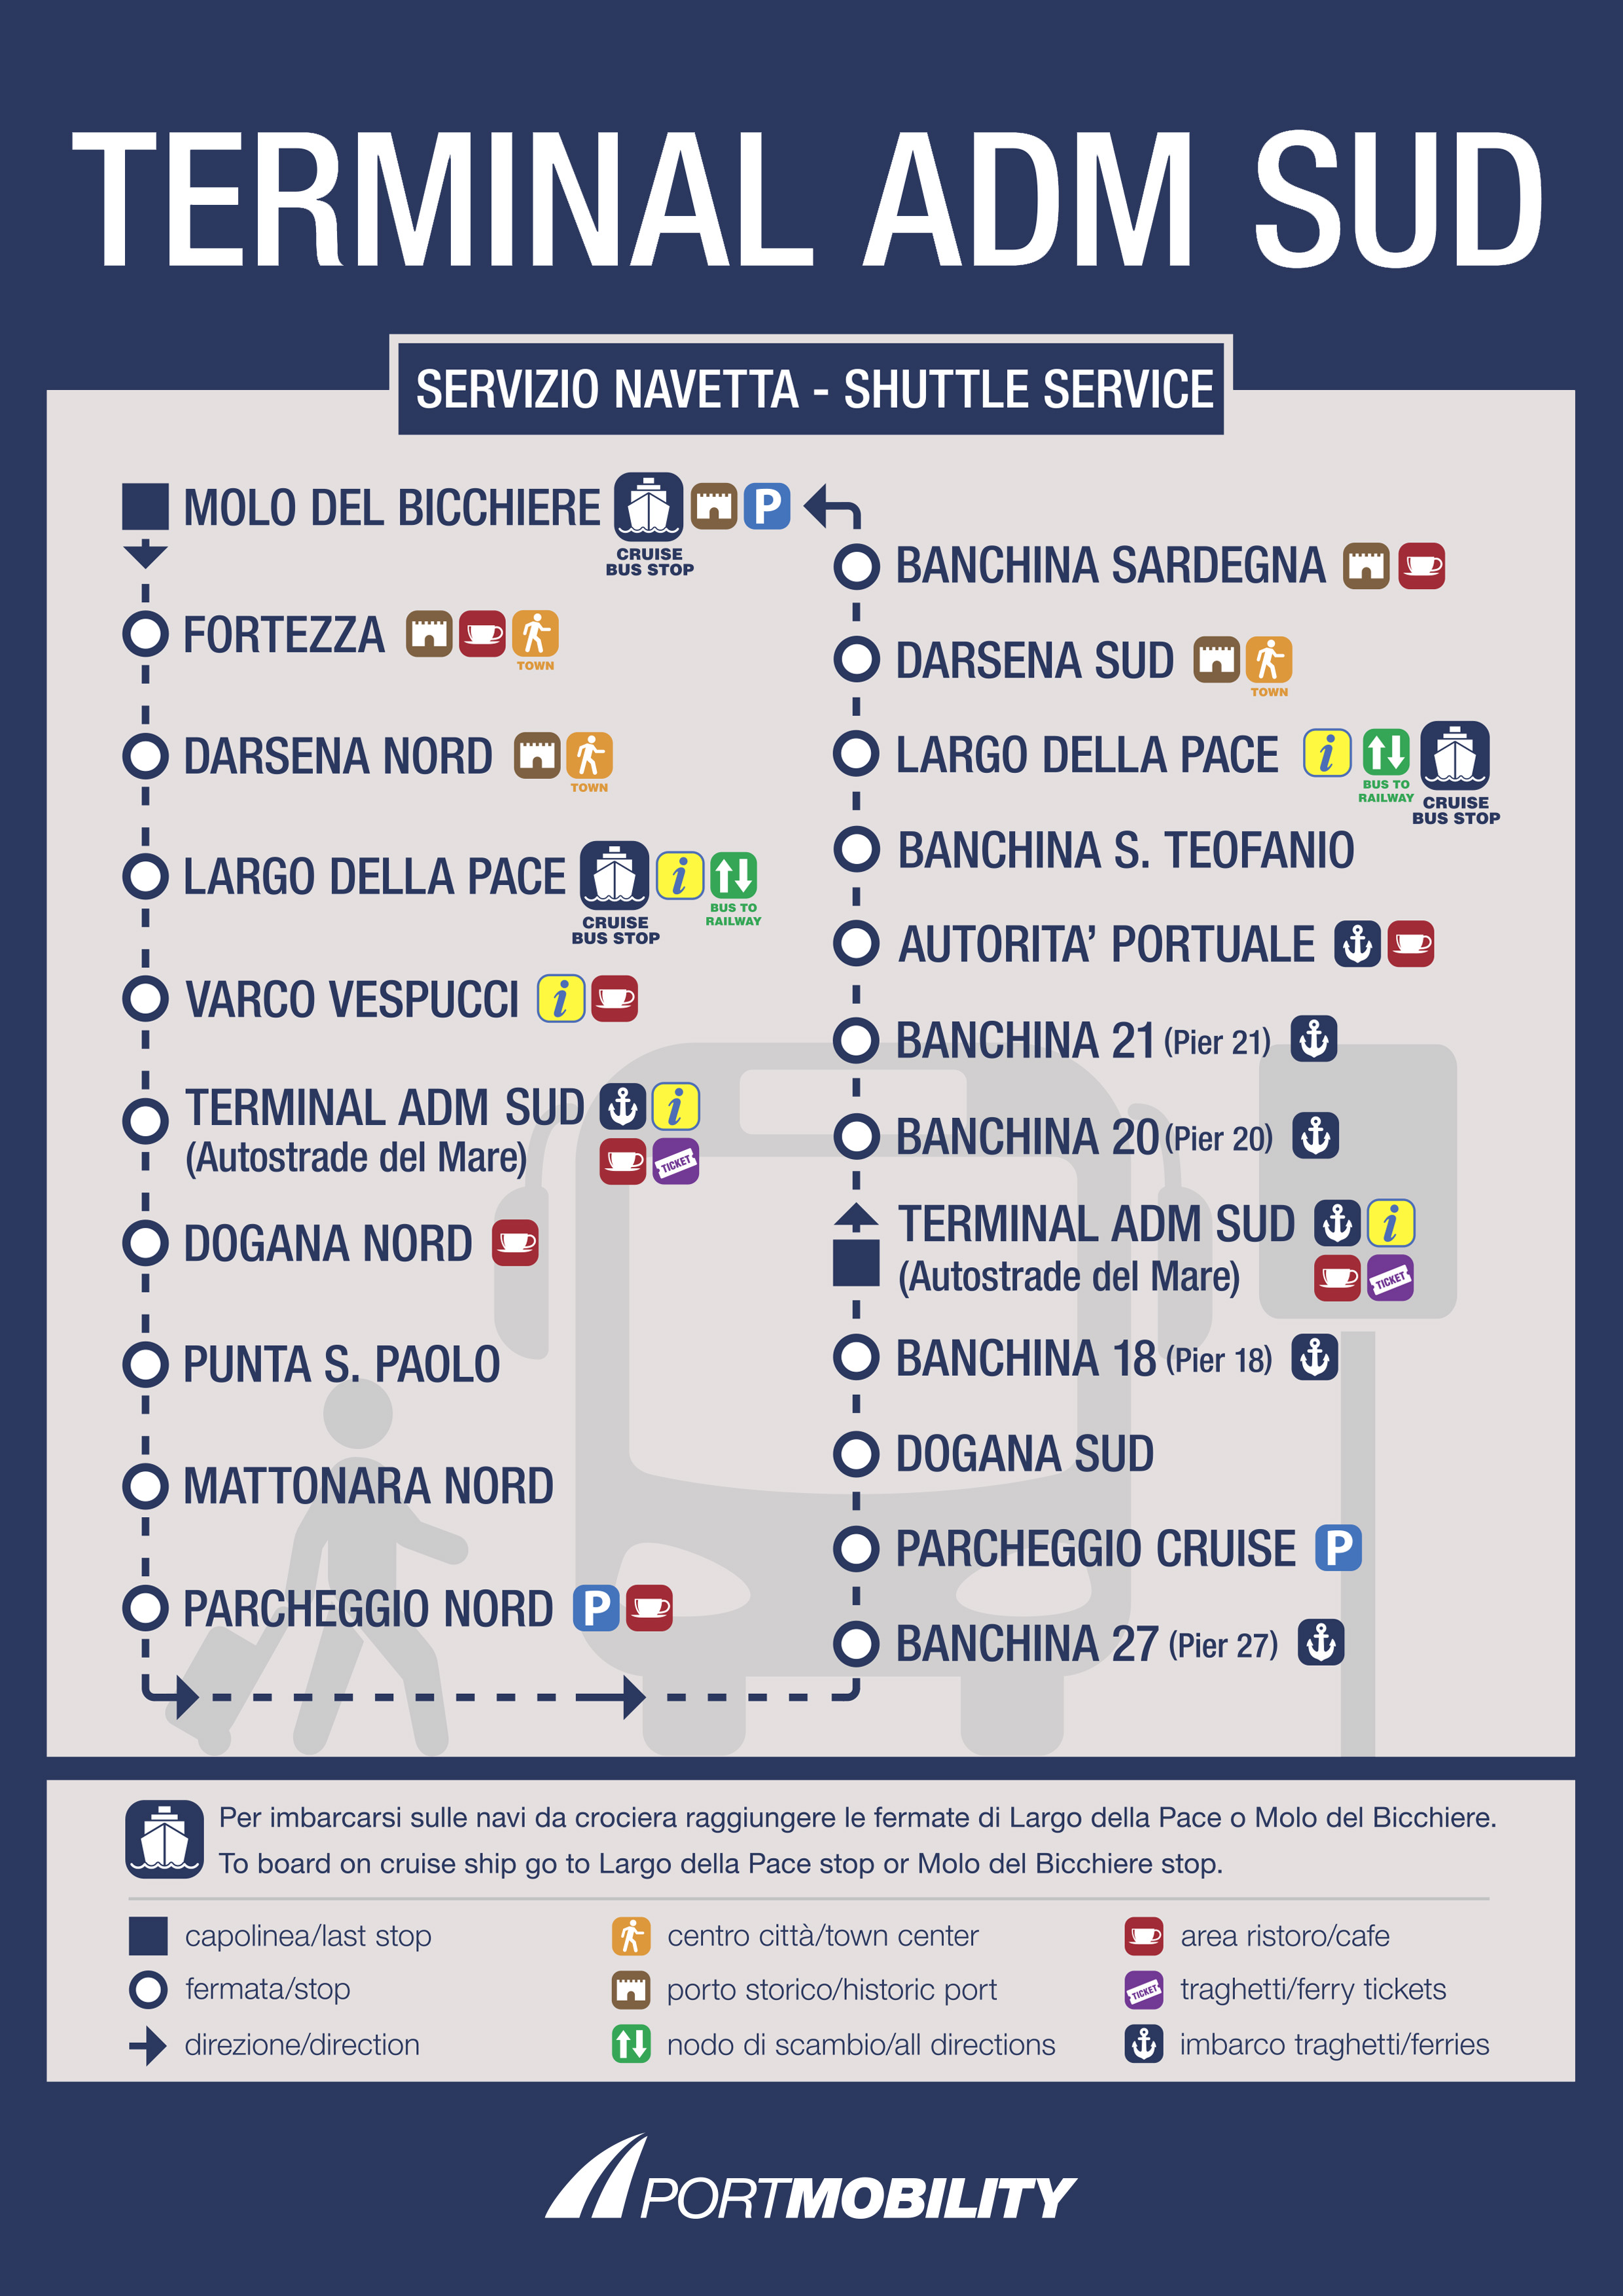 Shuttles Ordinary Service - Port of Civitavecchia